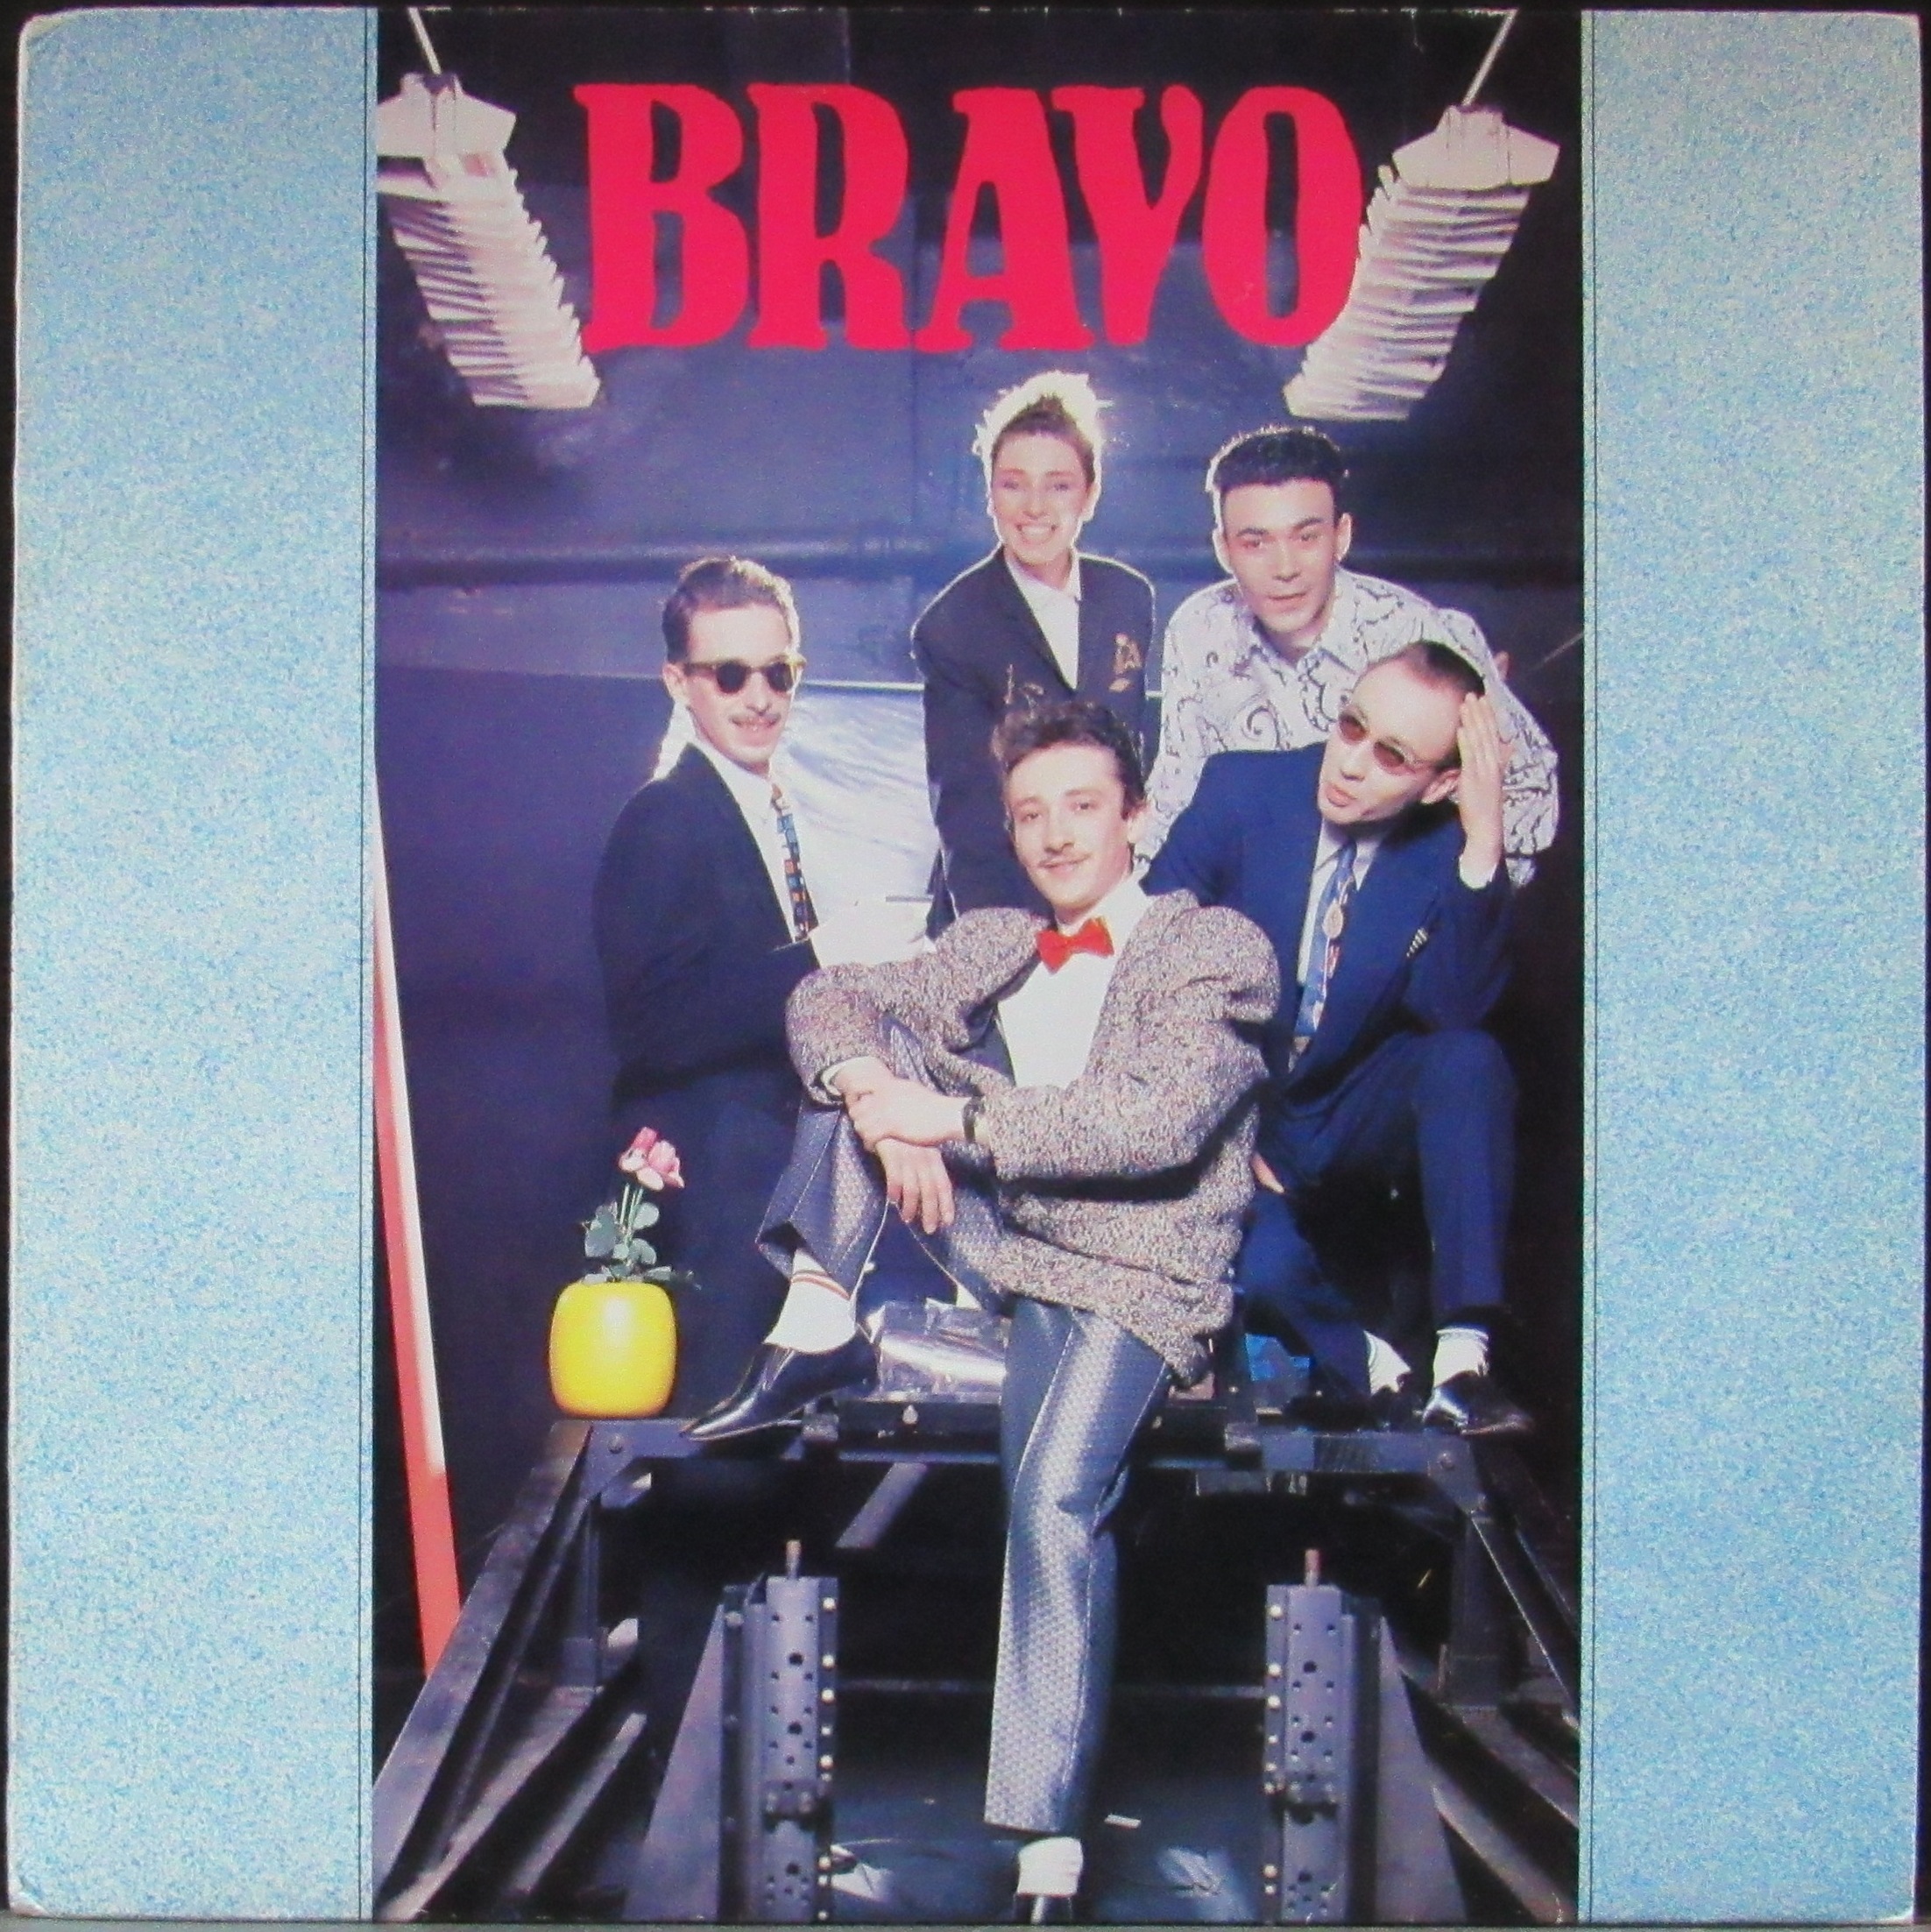 Браво контент. Группа Браво 1987. LP Браво: "Браво 1984-1985". Группа Браво 1990. Браво LP 1987 пластинка.